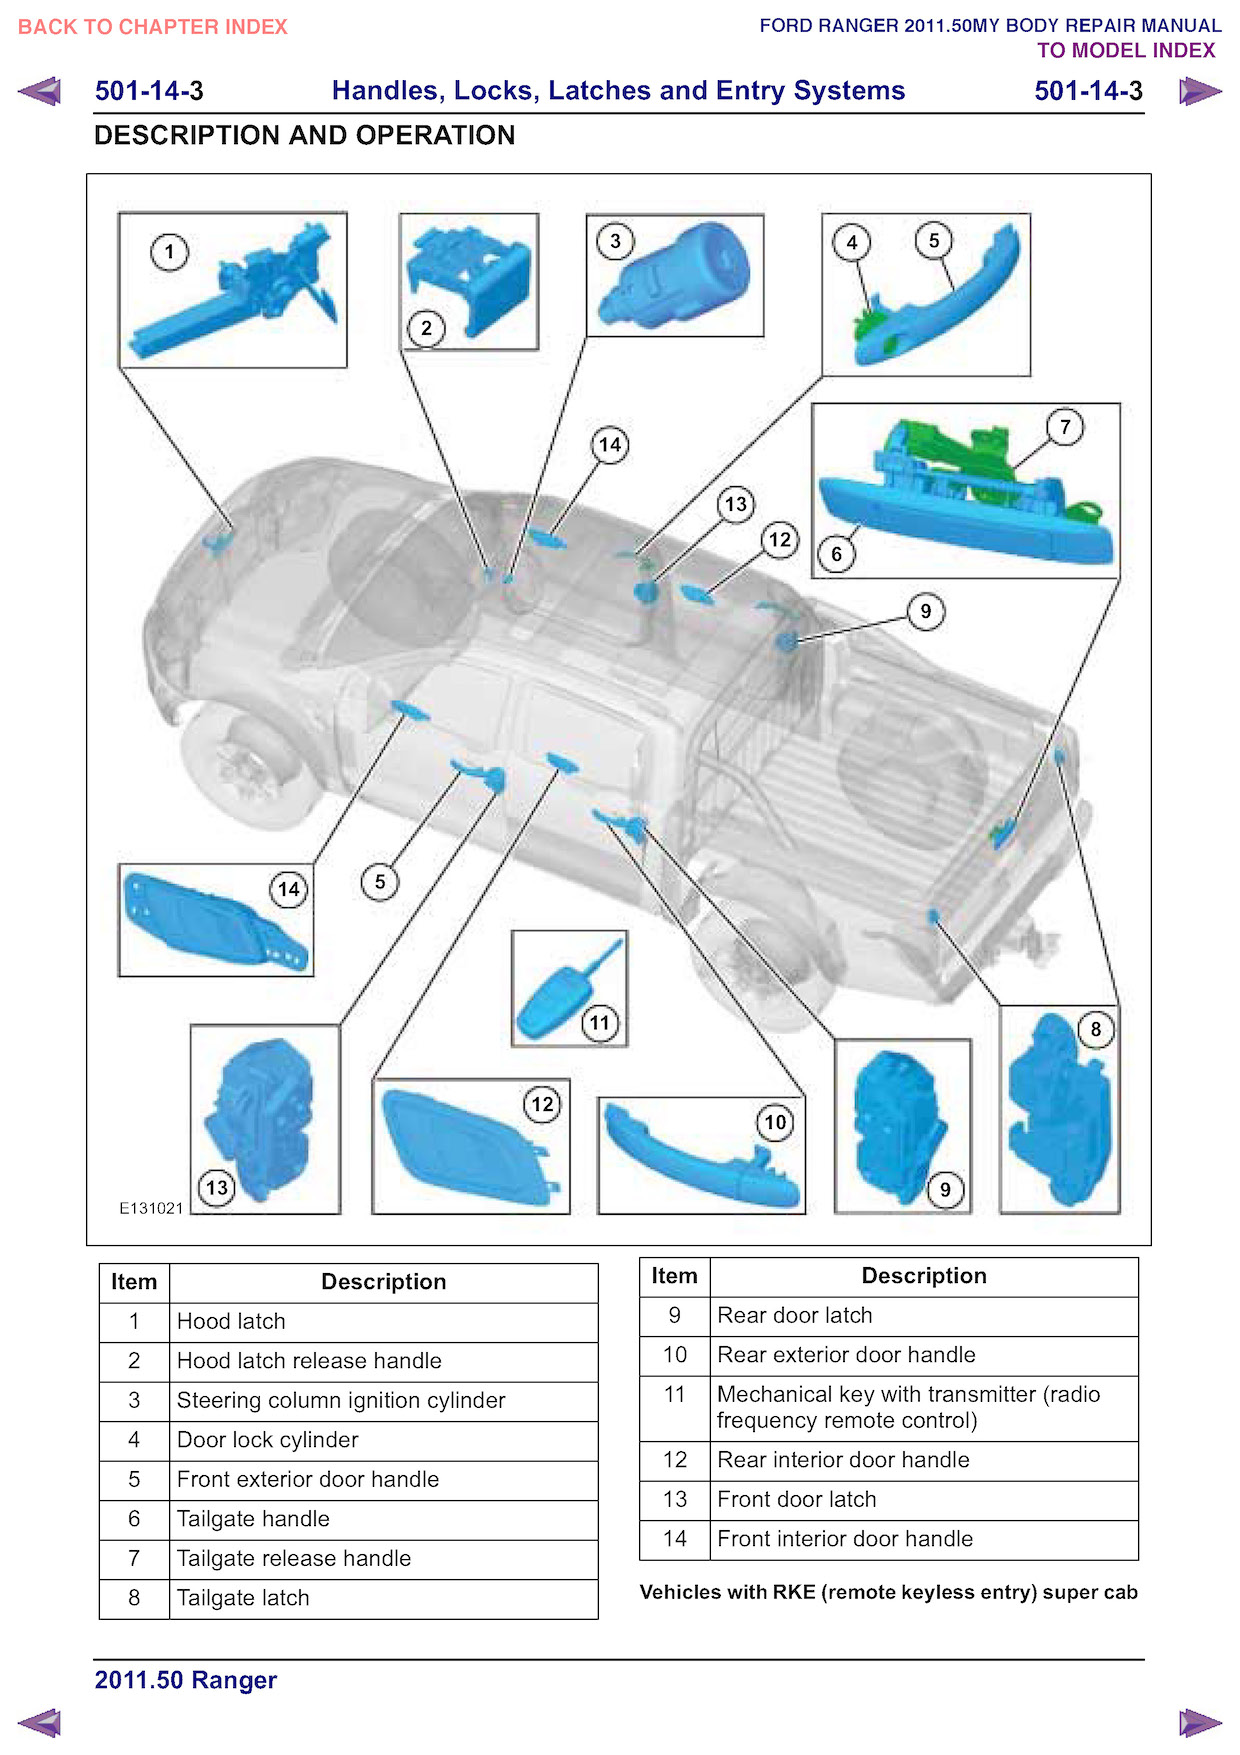 2011 Ford Ranger Repair Manual Handles and Locks